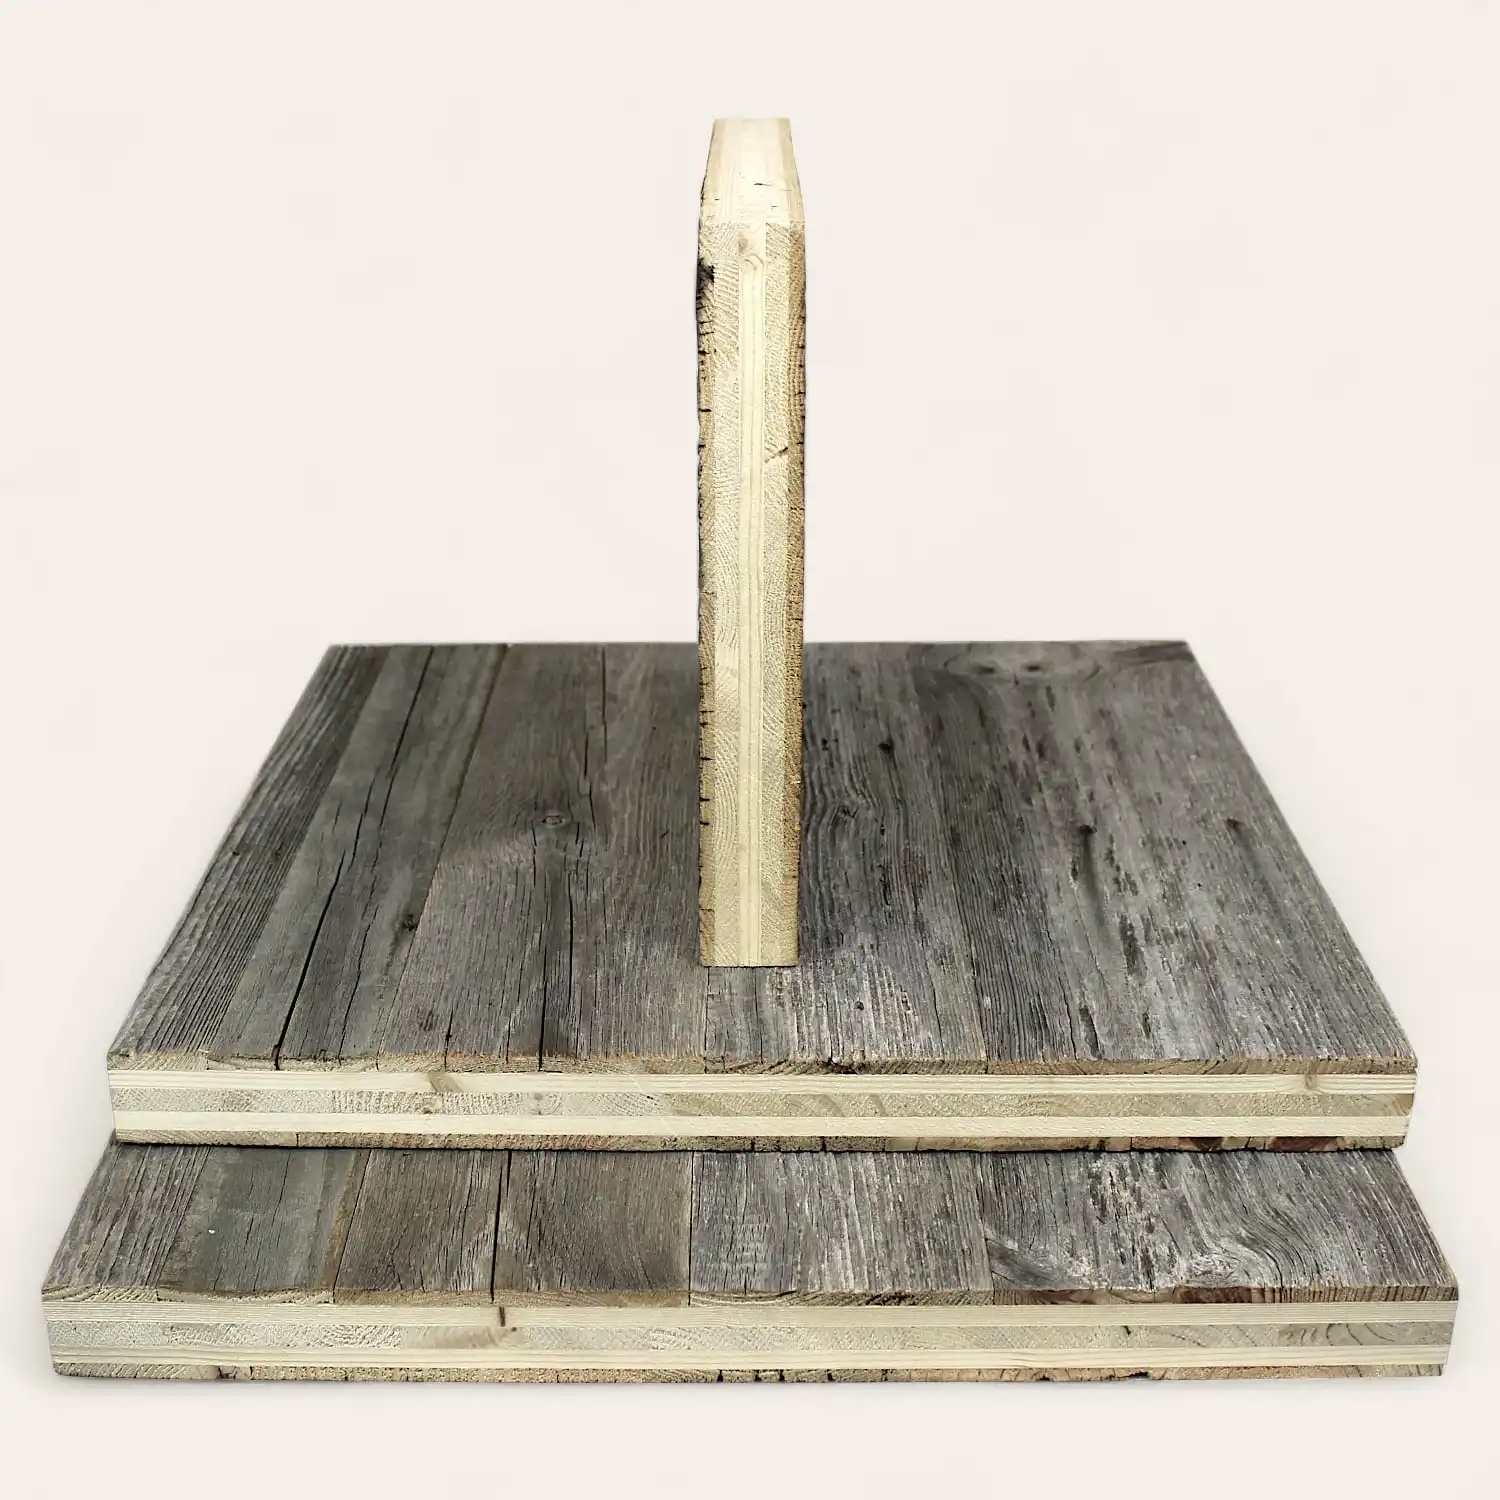  Une base en bois avec une cheville centrale verticale en bois, le tout construit à partir de panneaux de vieux bois avec une finition gris patiné. 